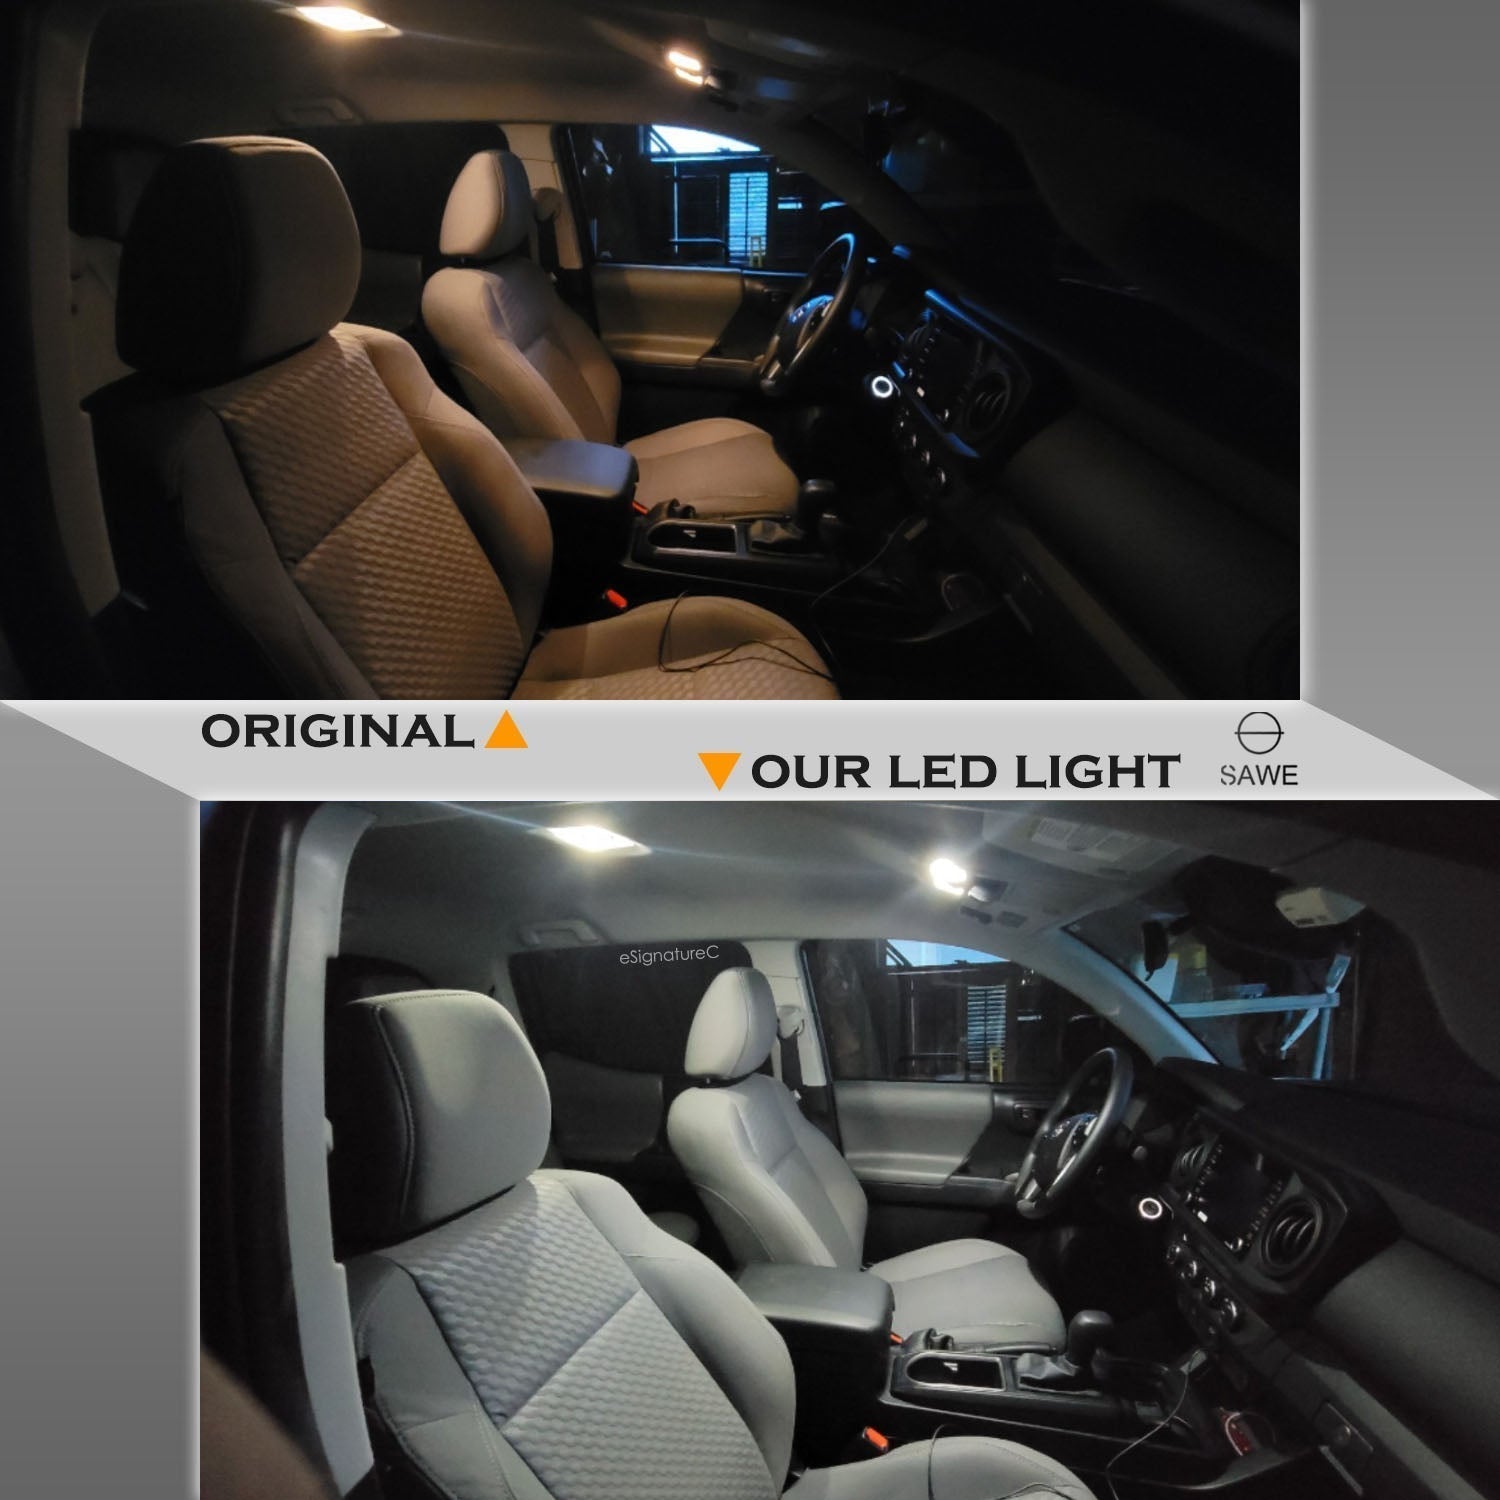 For Chevrolet Trailblazer Interior LED Lights - Dome & Map Lights Package Kit for 2002 - 2009 - White